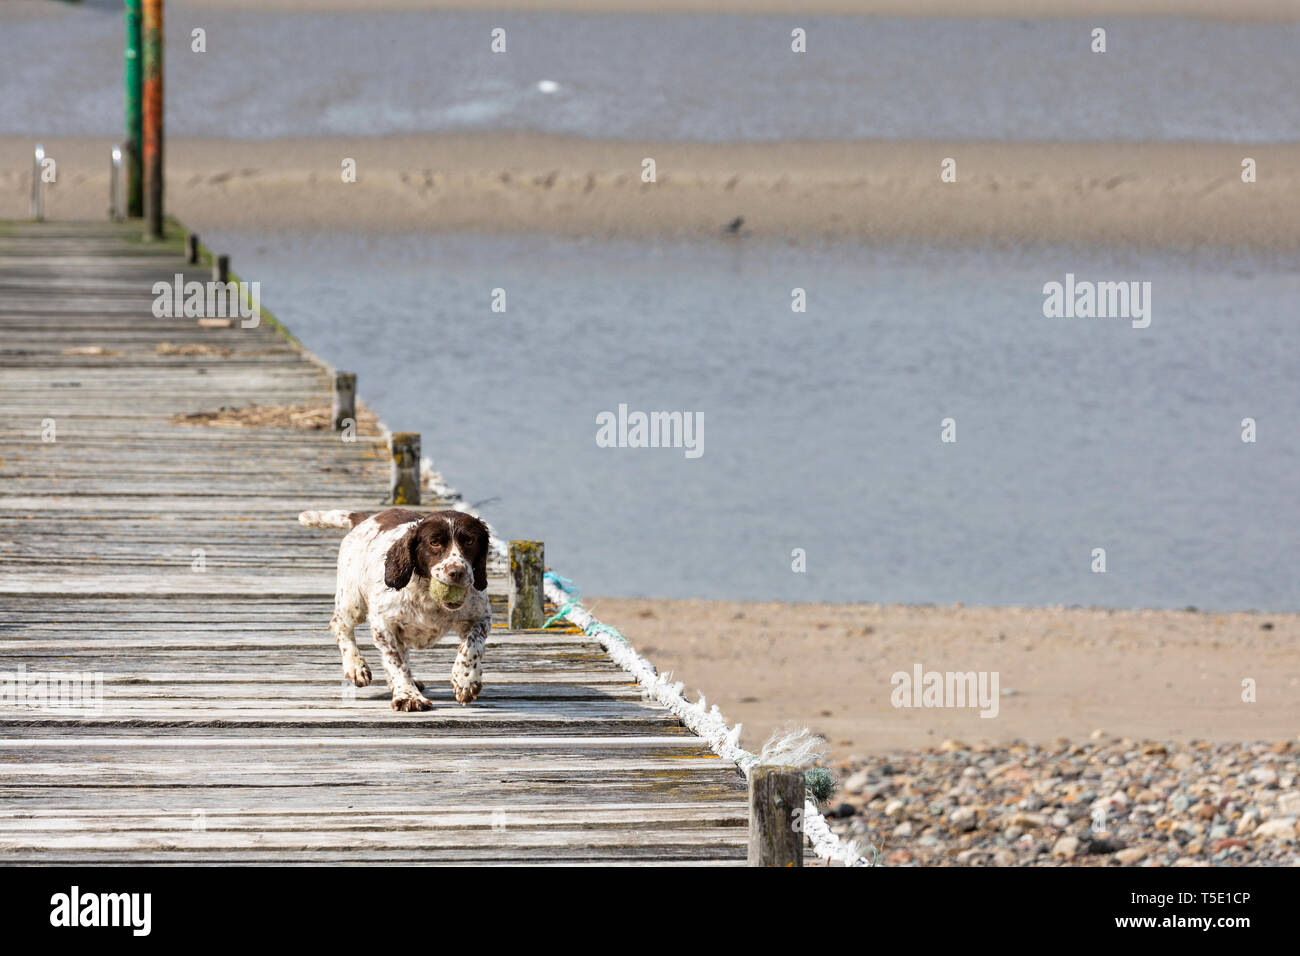 Un pequeño perro jugando fetch recorre un embarcadero con una bola en su desembocadura. Foto de stock